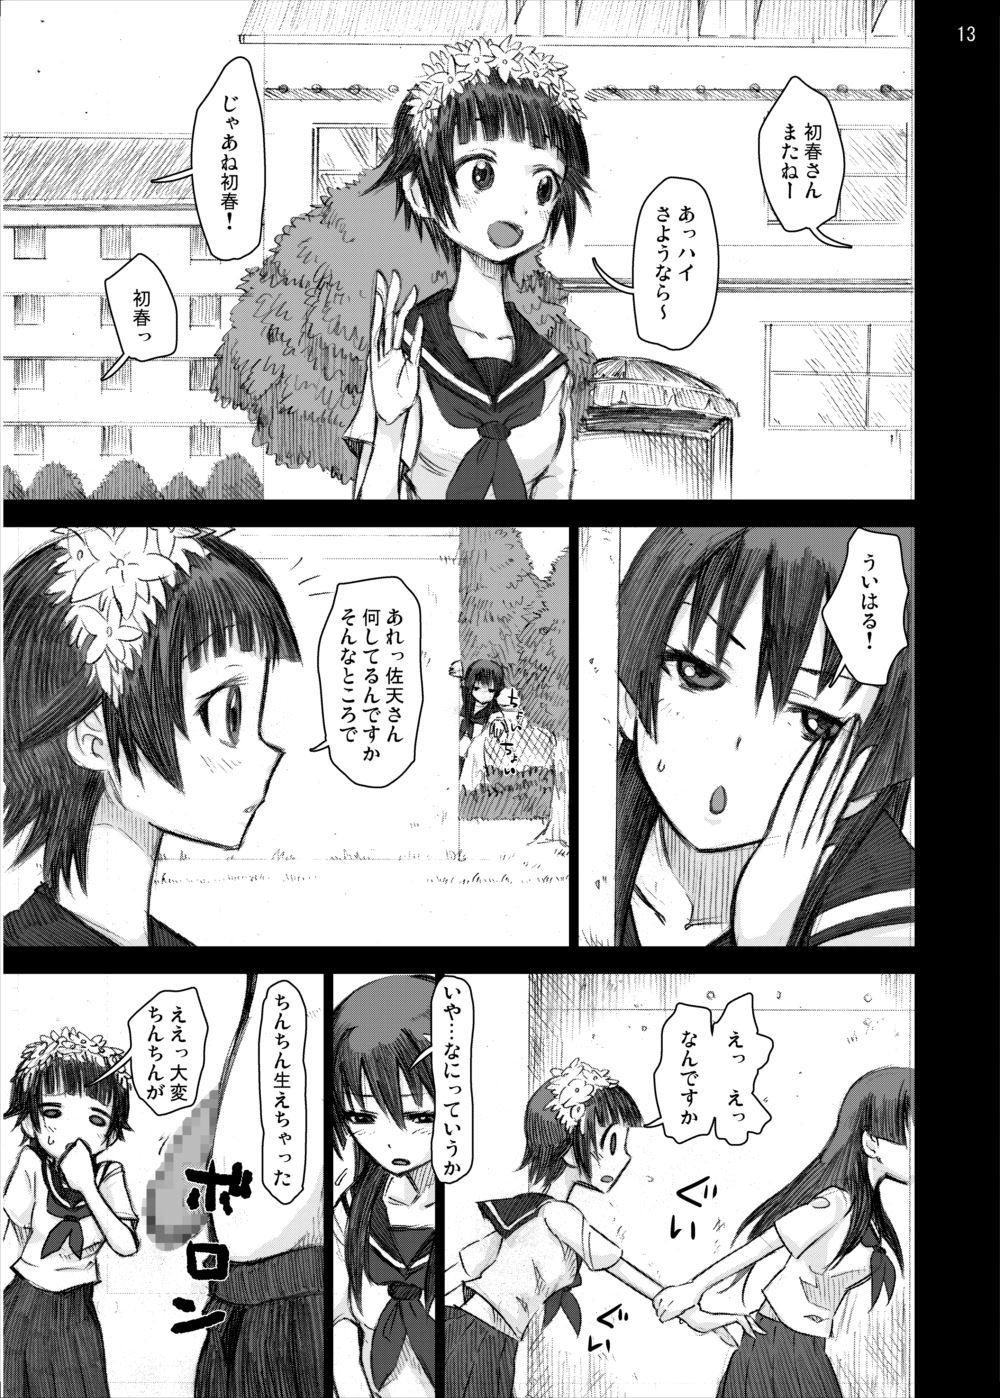 Class Room Ryoujoku Jigoku 4 - Futanari Stalker Rape... - Toaru kagaku no railgun Long - Page 12